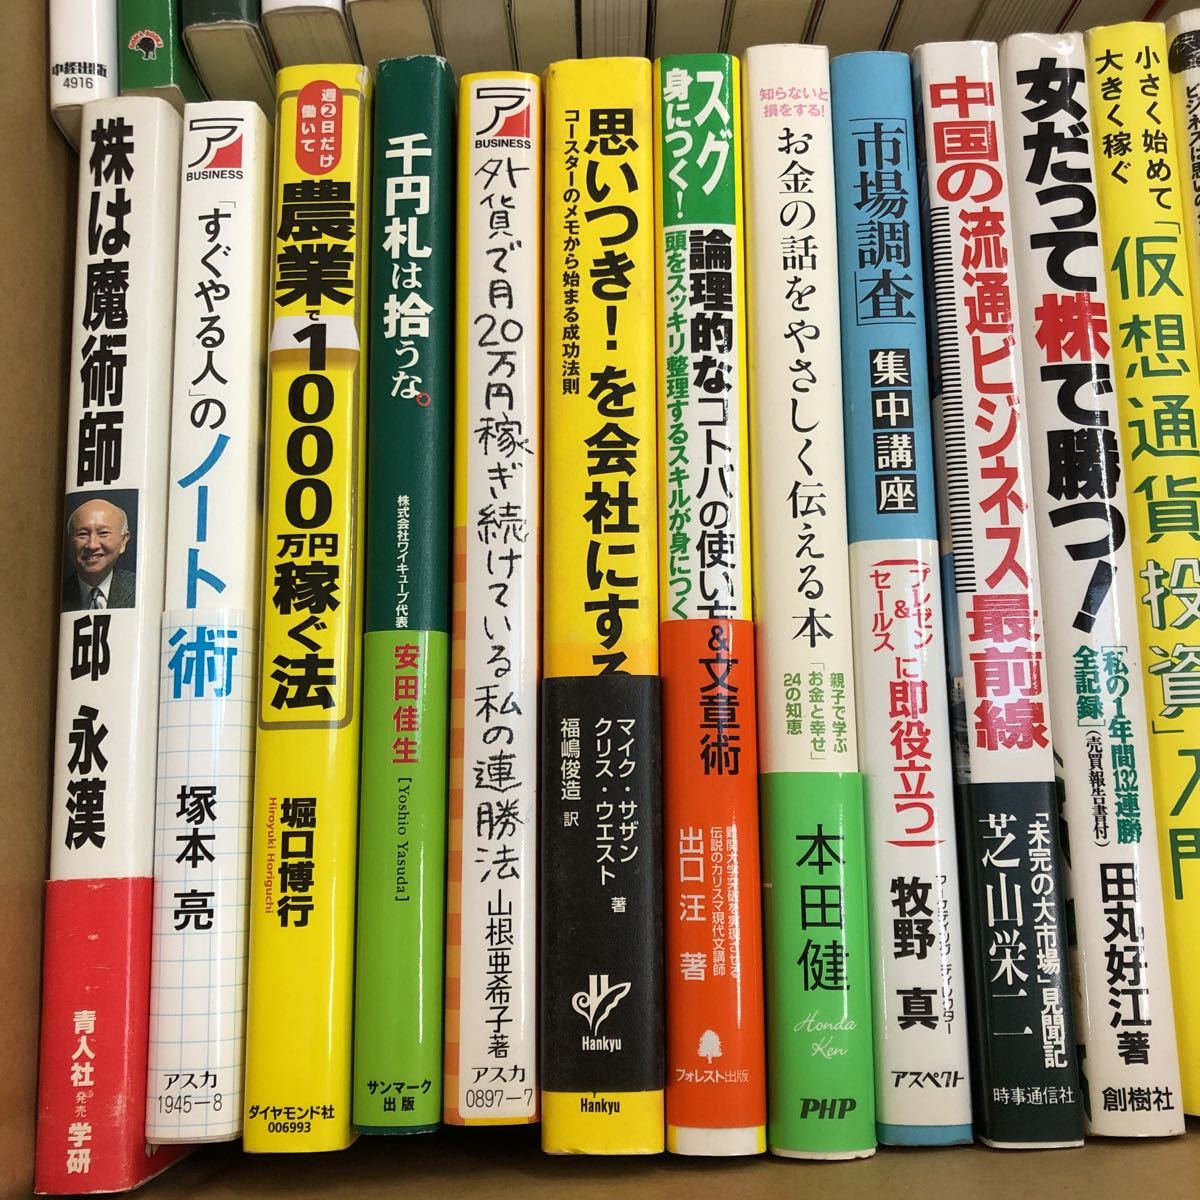 新品登場 投資 関連本セット20冊 まとめ売り asakusa.sub.jp